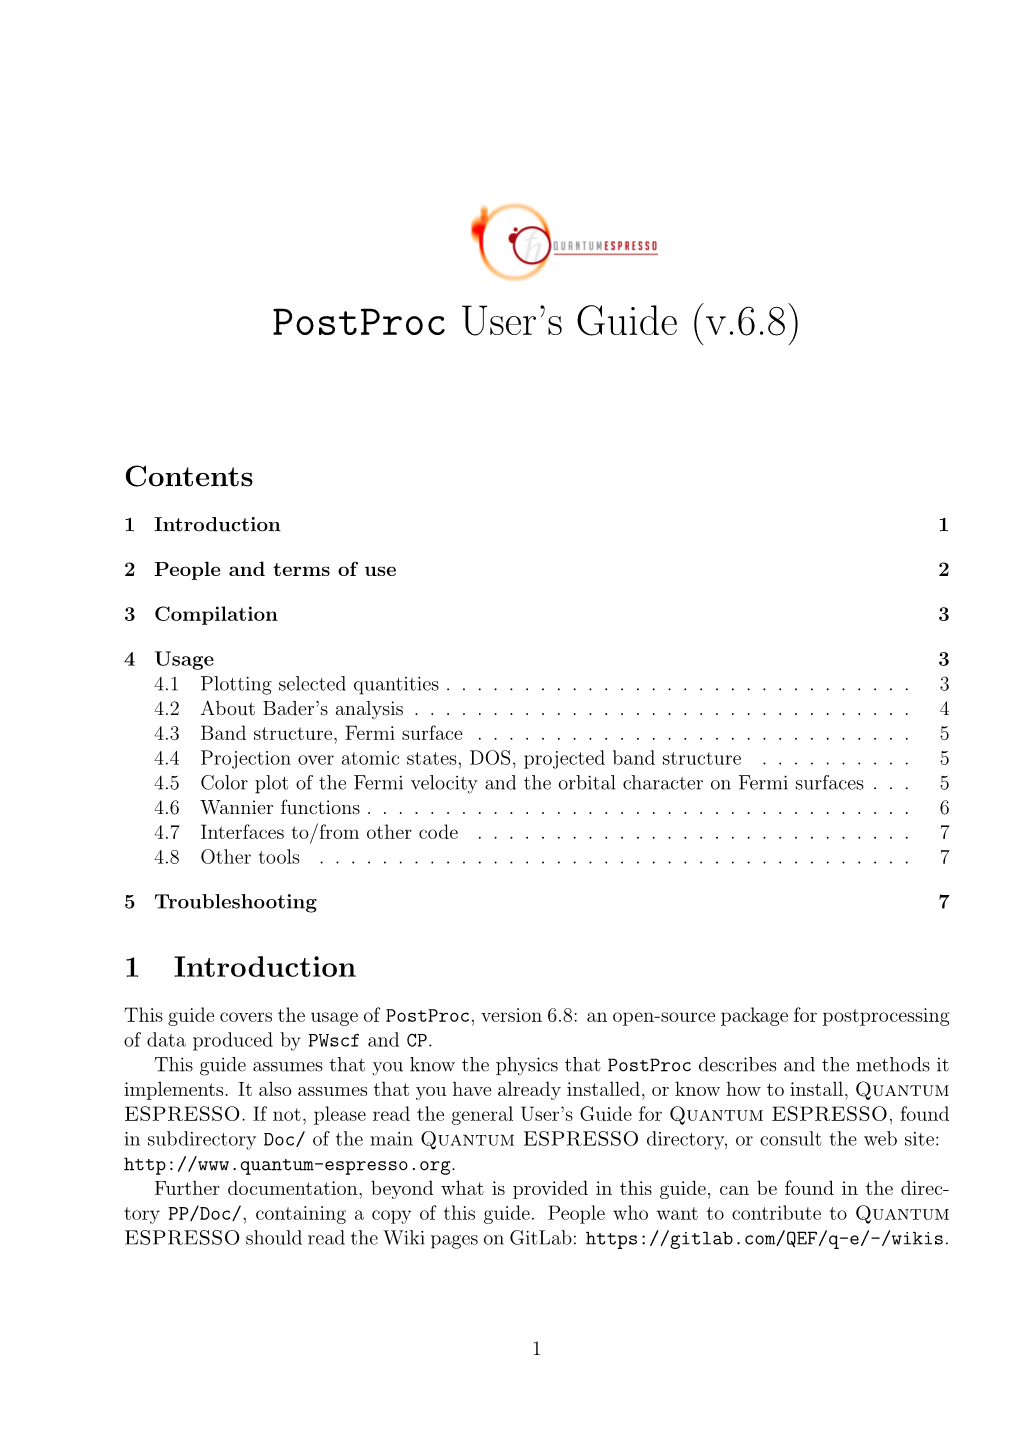 Postproc User's Guide (V.6.8)